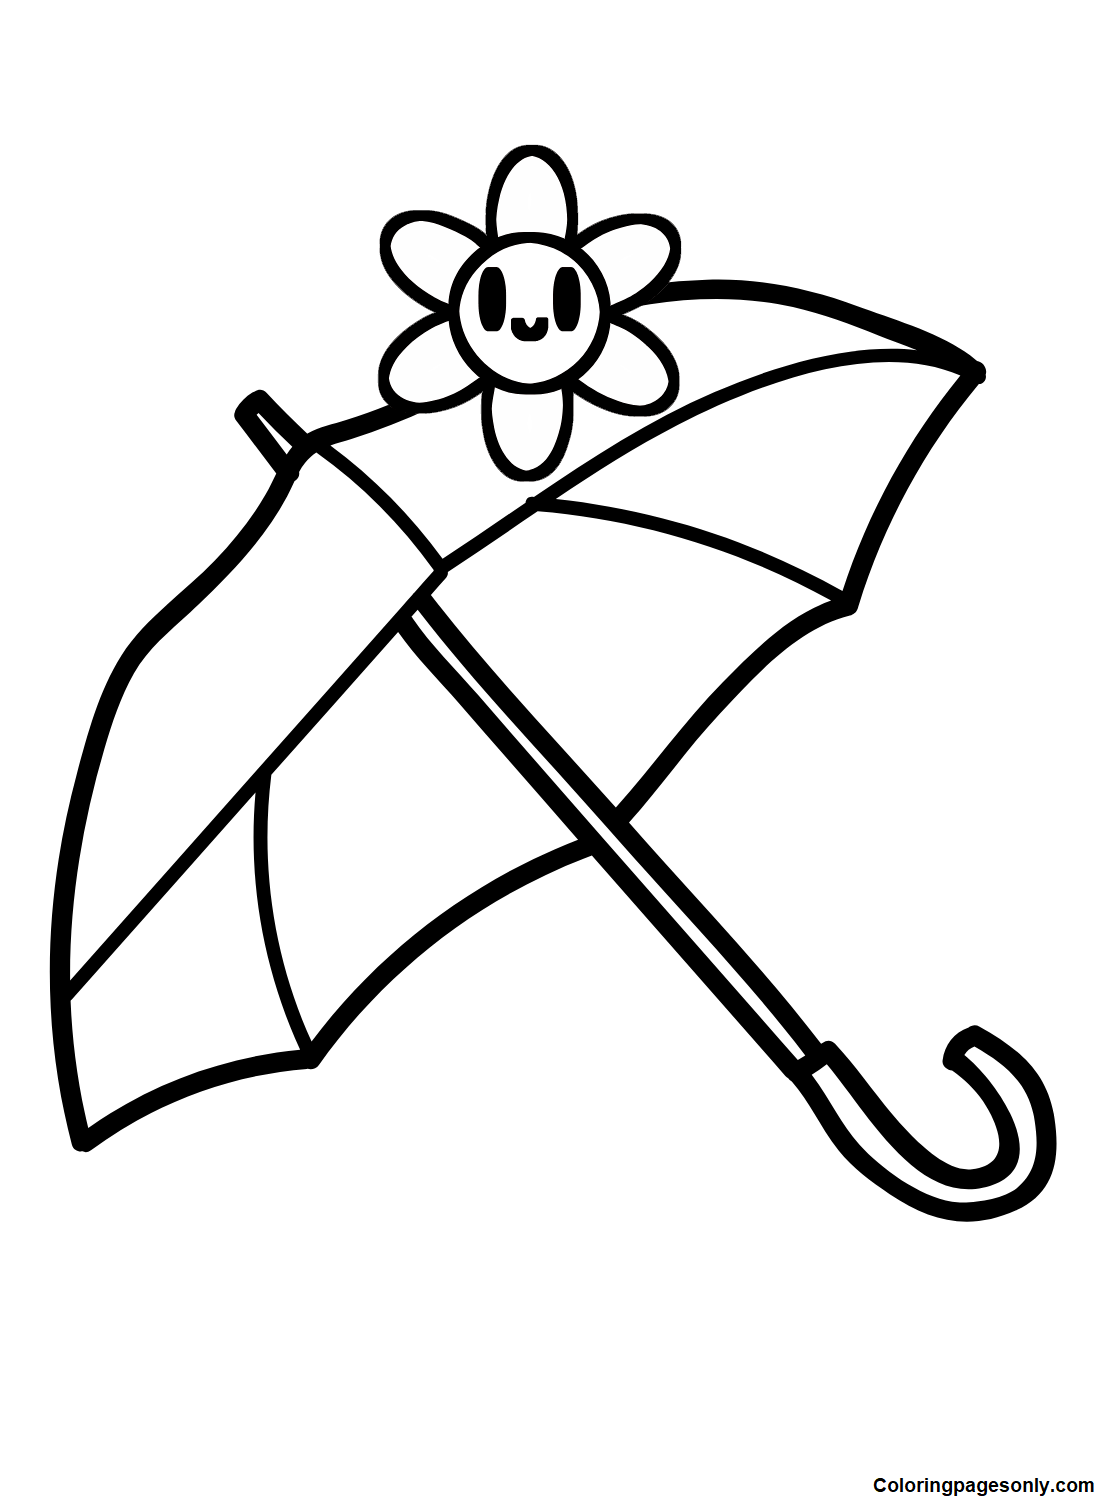 Cute Umbrella from Umbrella